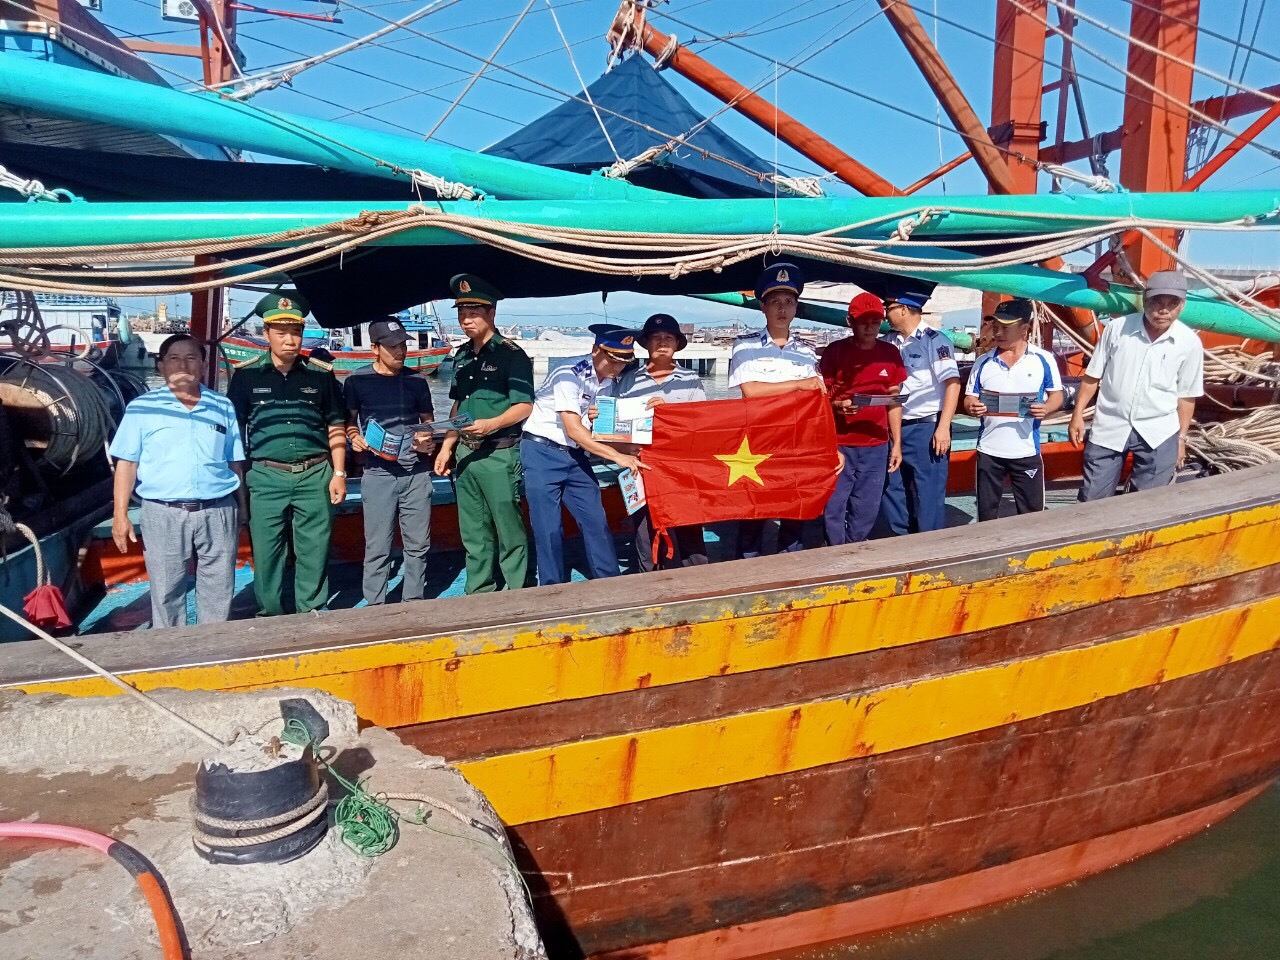 Cán bộ,chiến sĩ Đồn Biên phòng Triệu Vân phối hợp với Cảnh sát biển tuyên truyền và tặng cờ cho bà con ngư dân trên tàu.